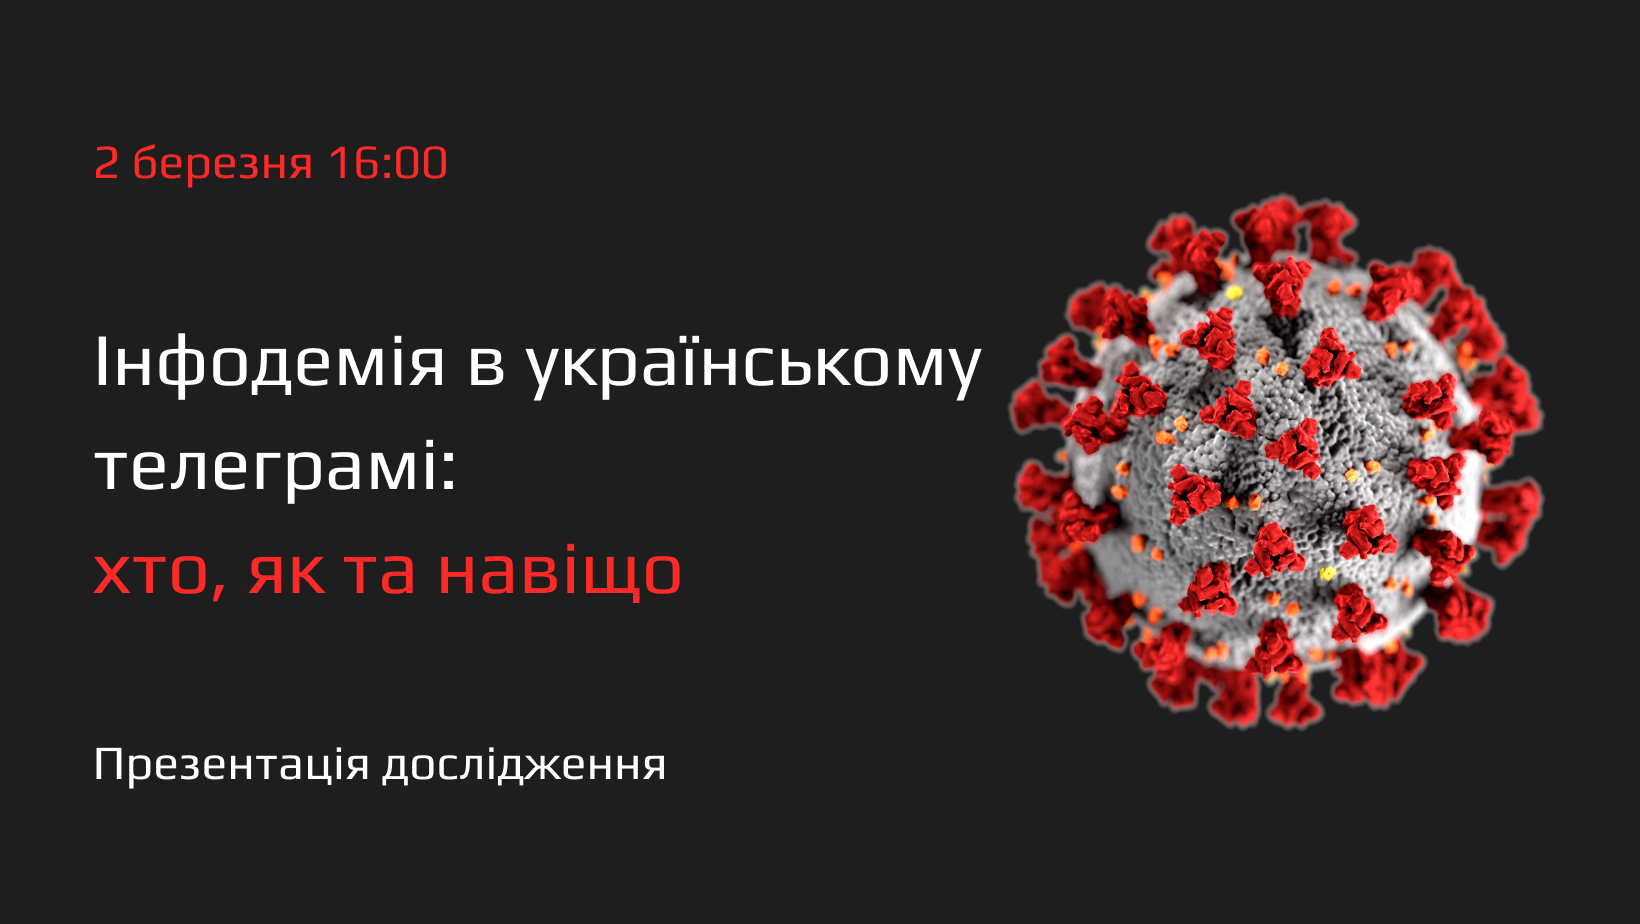 2 березня — презентація дослідження «Інфодемія в українському телеграмі: хто, як та навіщо?»